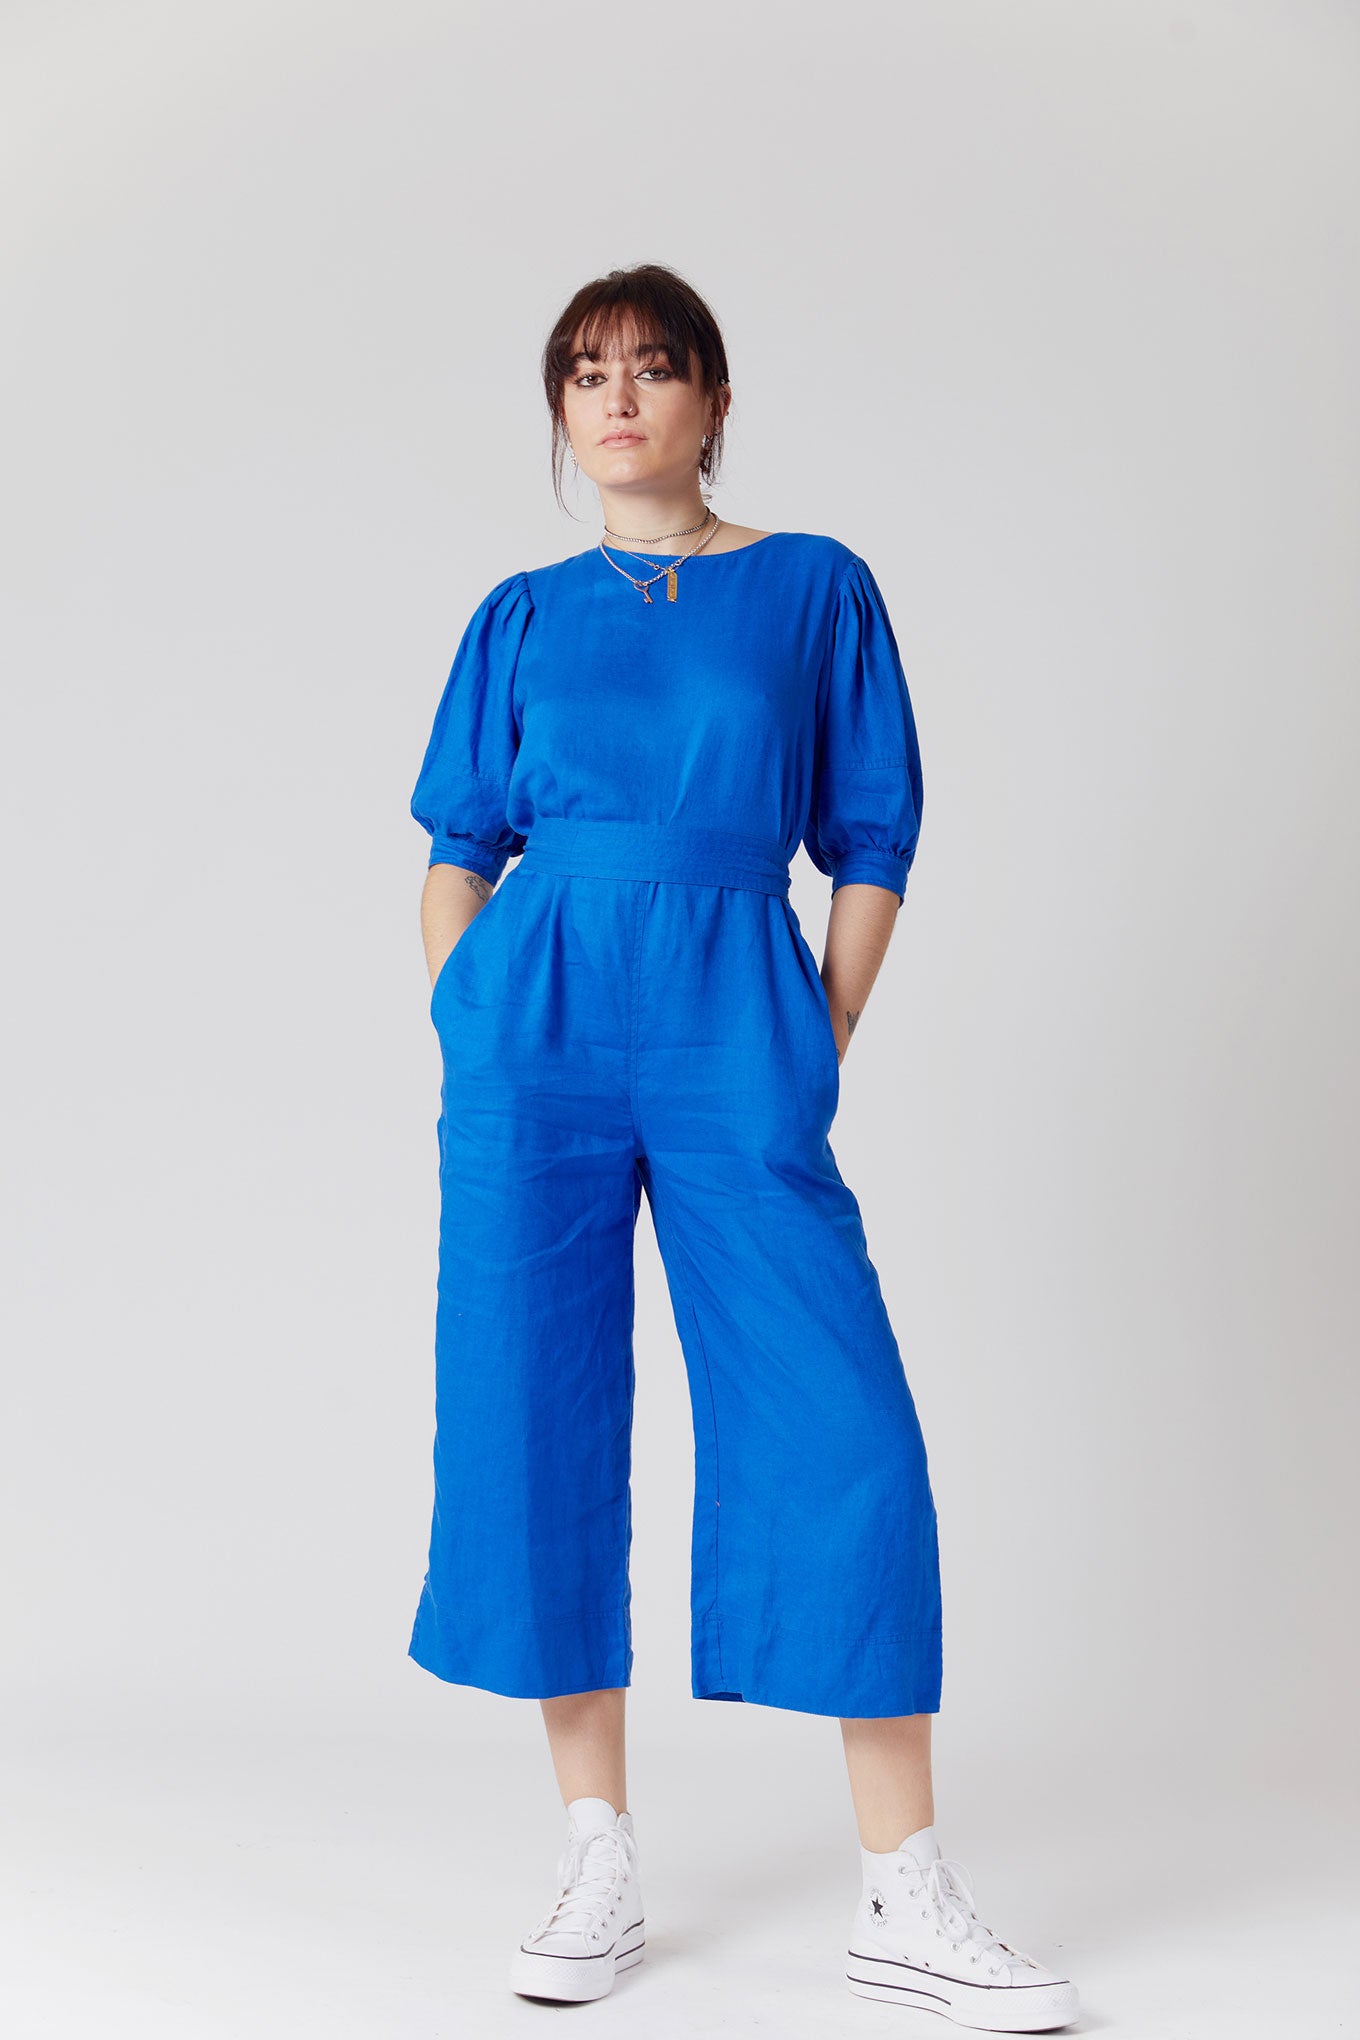 FAYE Organic Linen Jumpsuit Blue, SIZE 3 / UK 12 / EUR 40